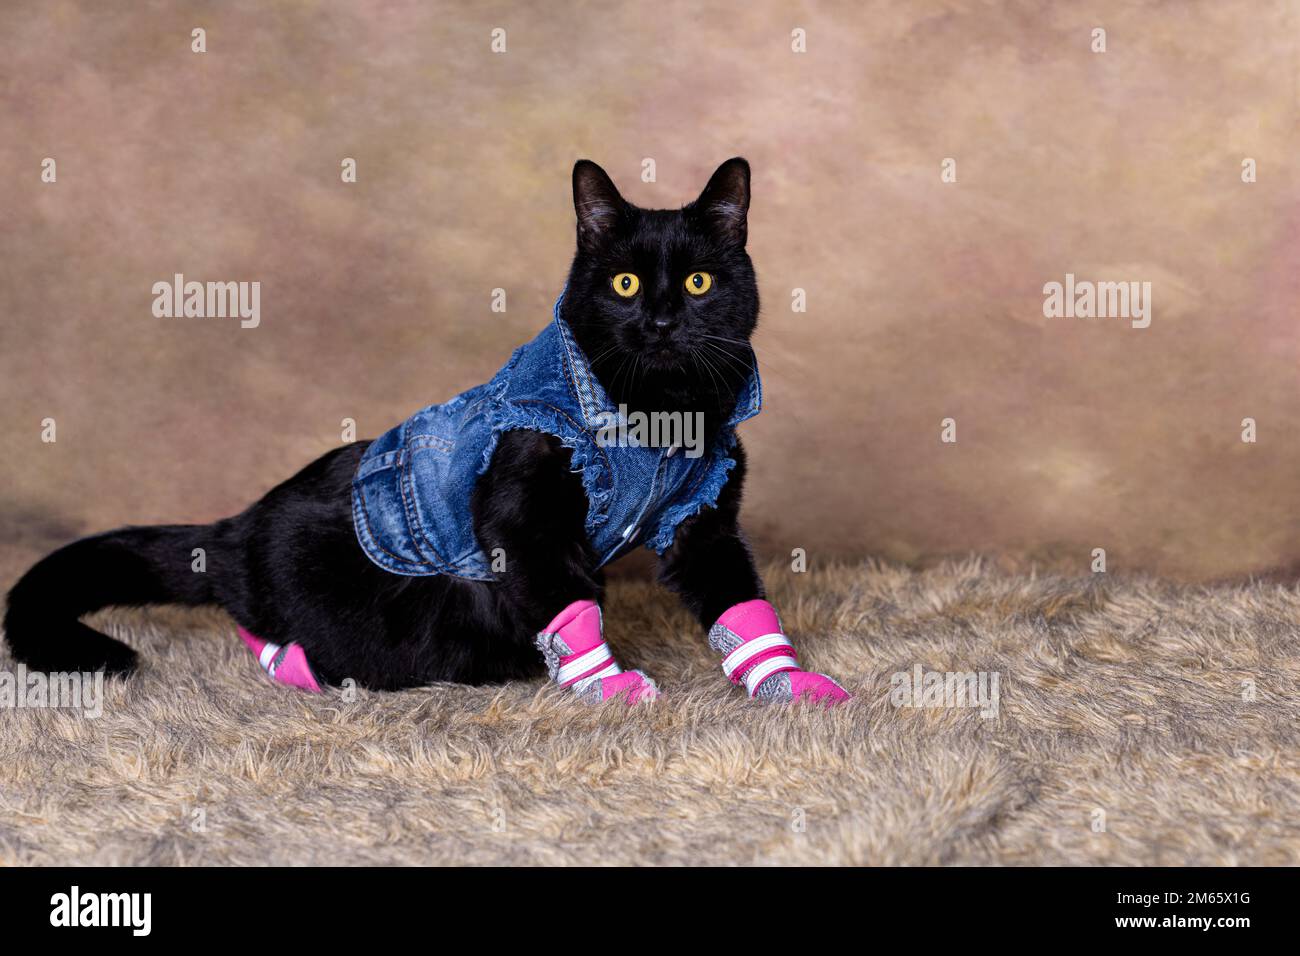 Gato negro en chaqueta de jean azul posado como un modelo de moda Foto de stock